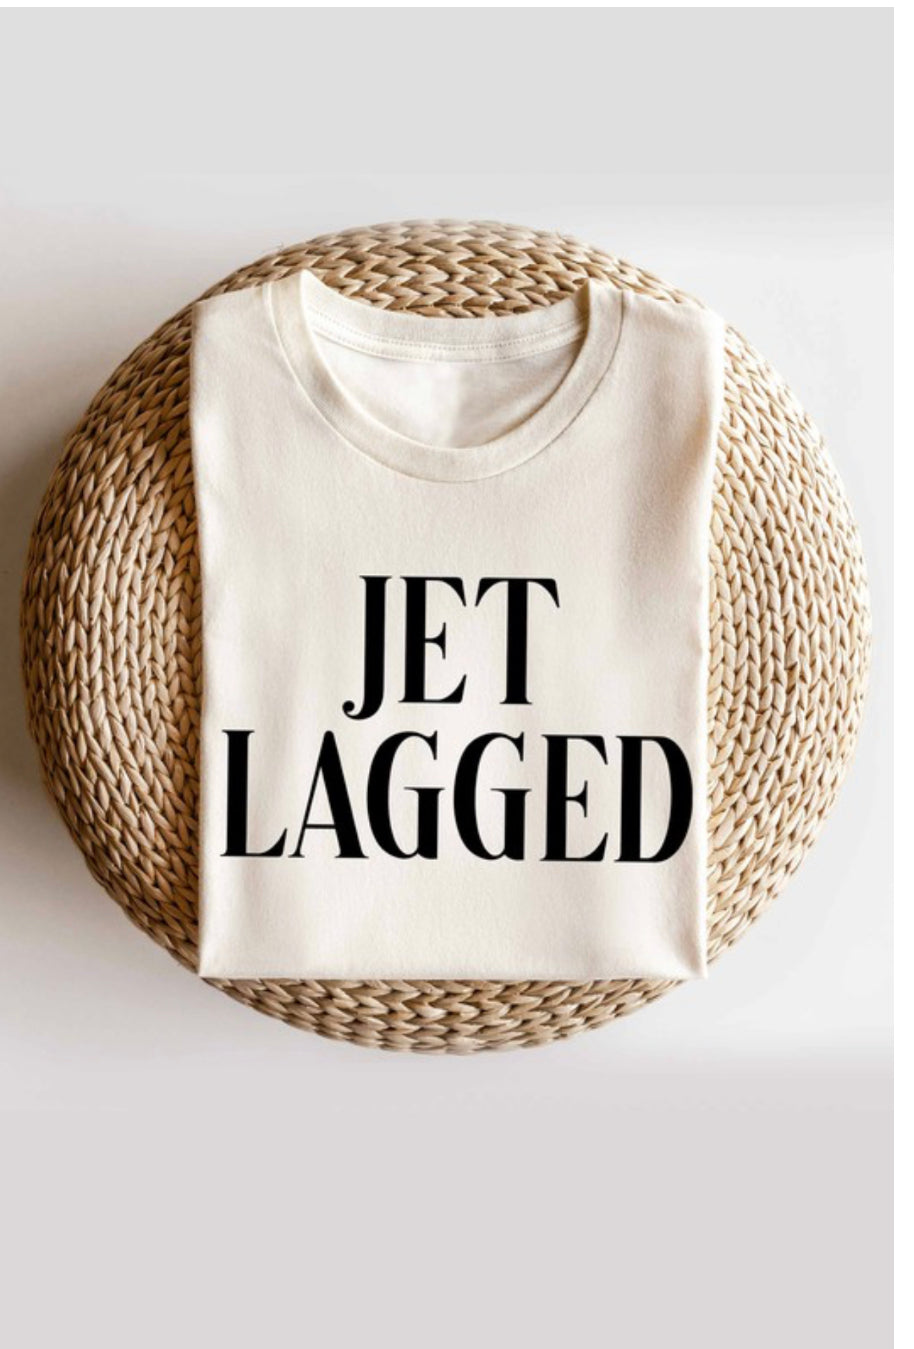 Jet Lagged Tshirt